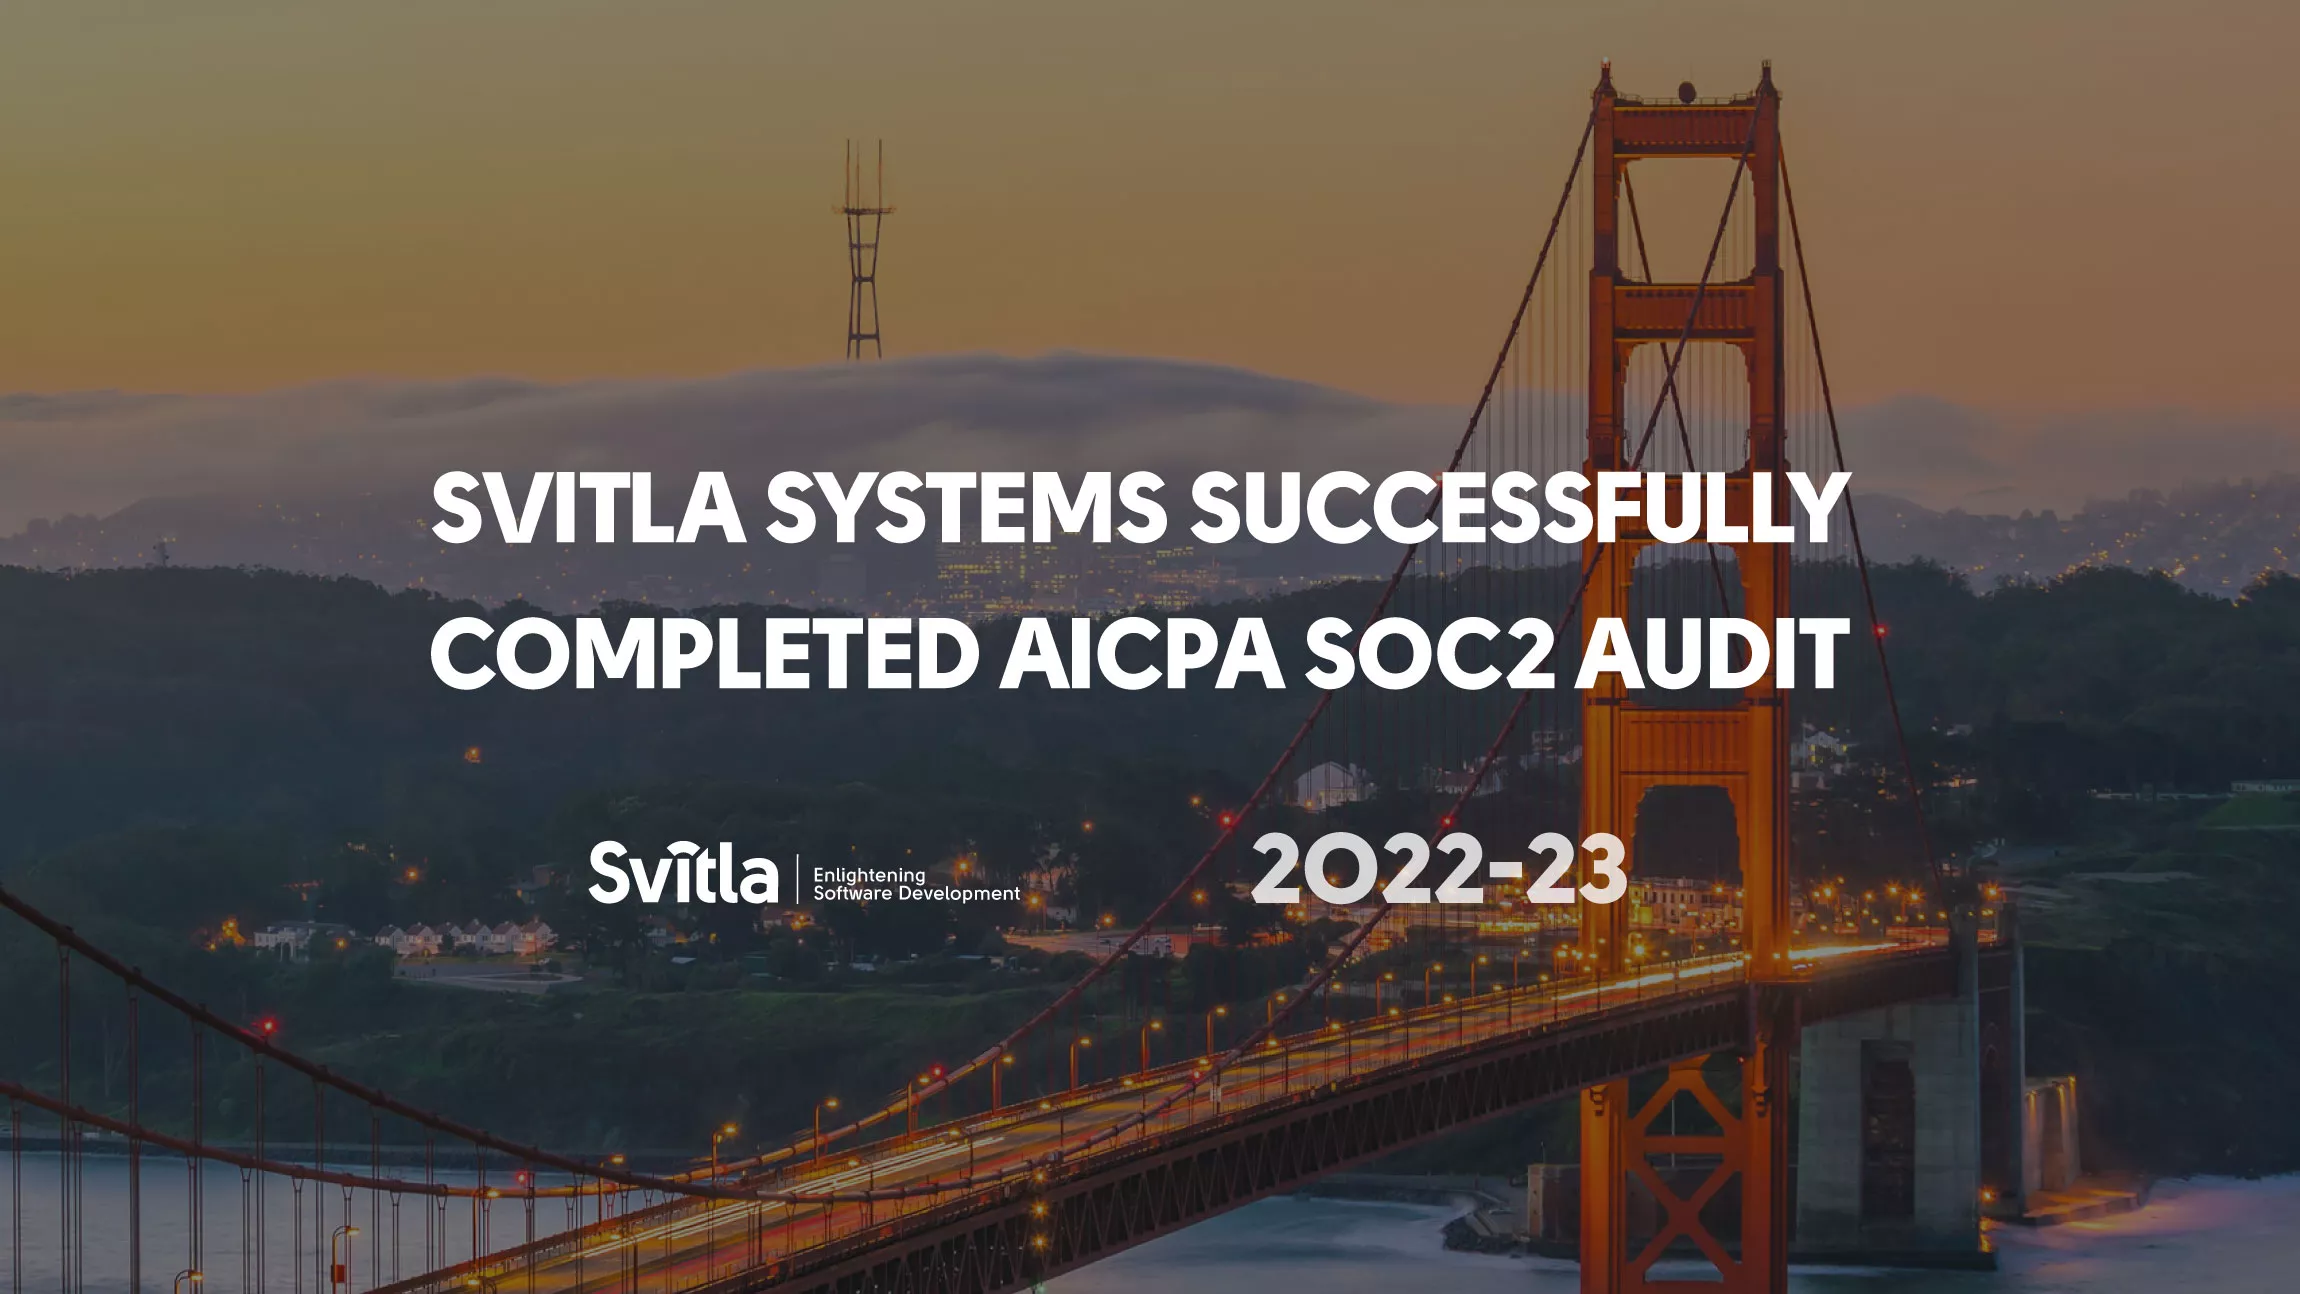 Svitla Systems AICPA SOC2 